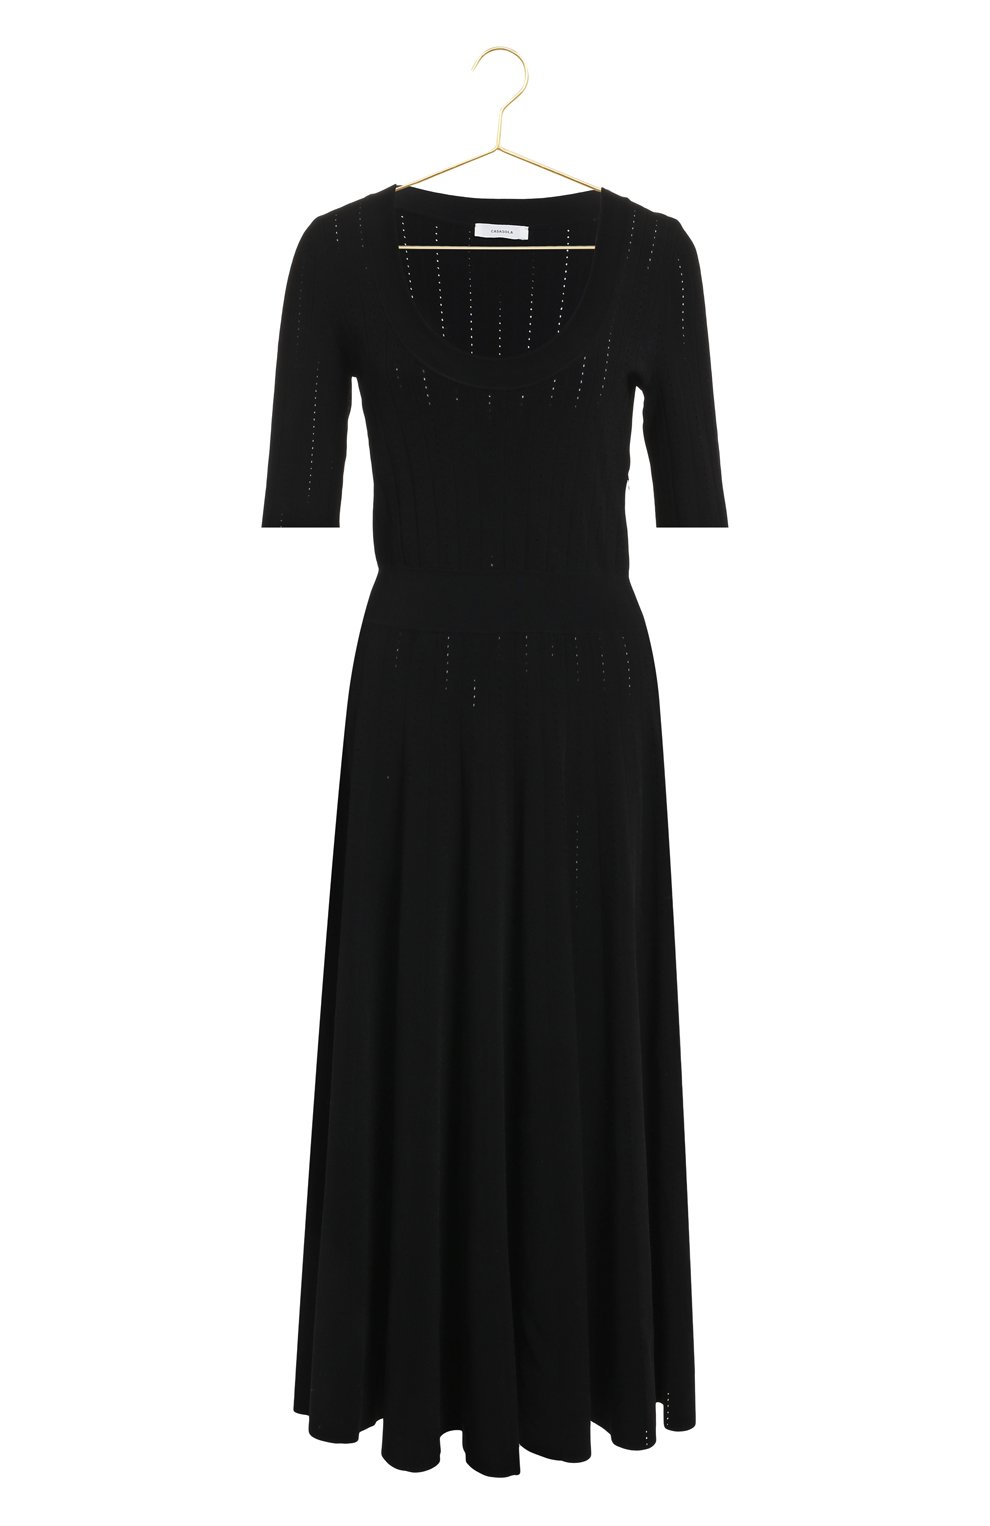 Платье из вискозы | Casasola | Чёрный - 1